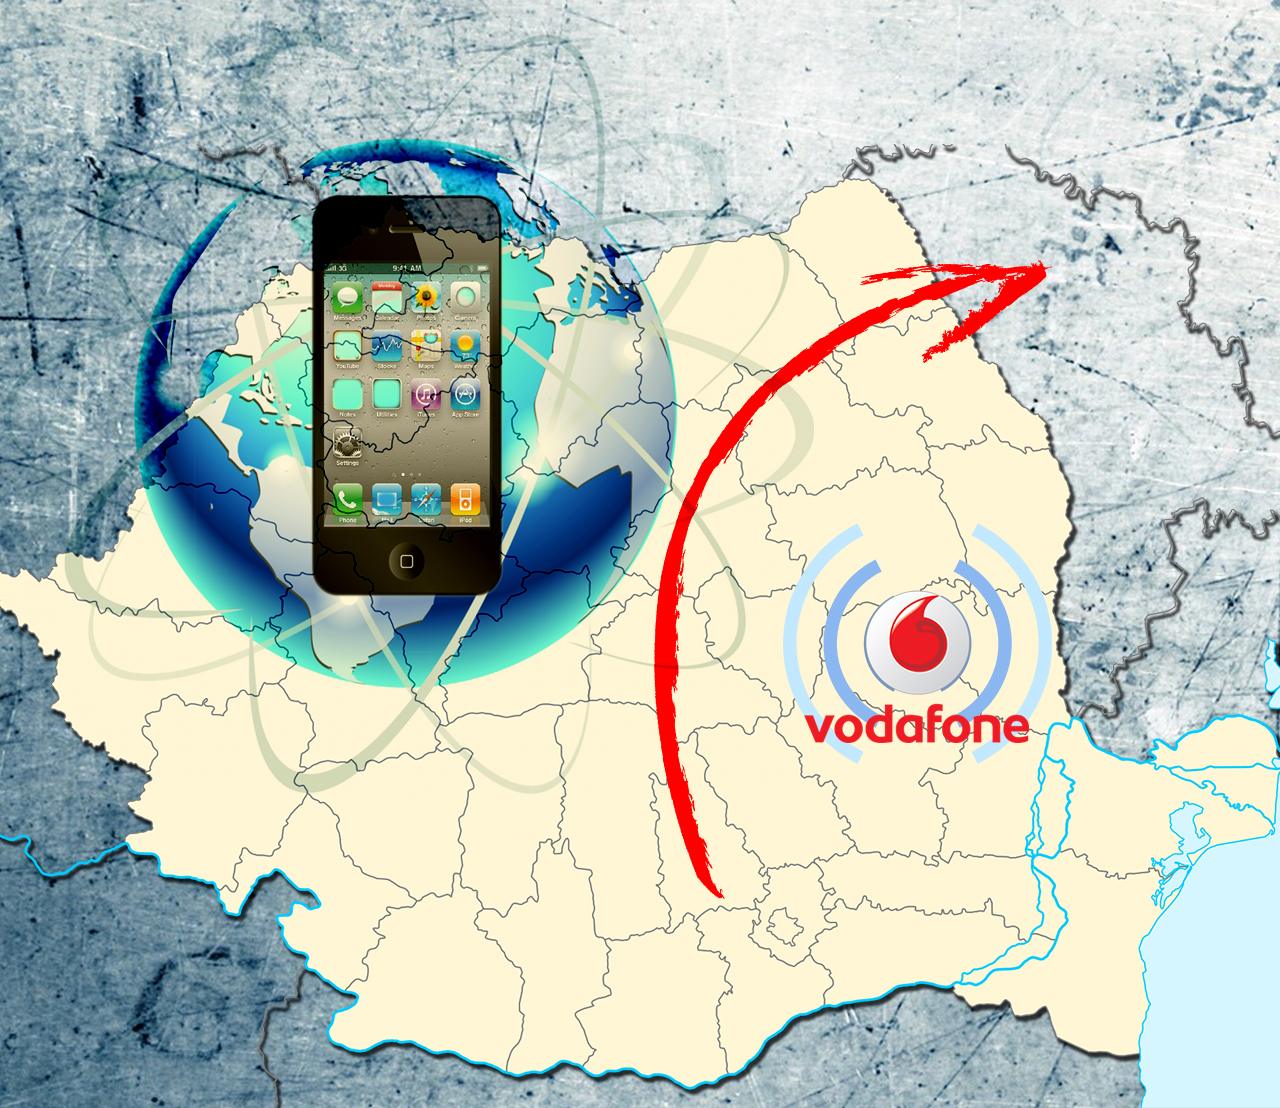 Din cauza Vodafone, mini-vacanţa la Chişinău s-a transformat într-un calvar pentru un cuplu din Galaţi